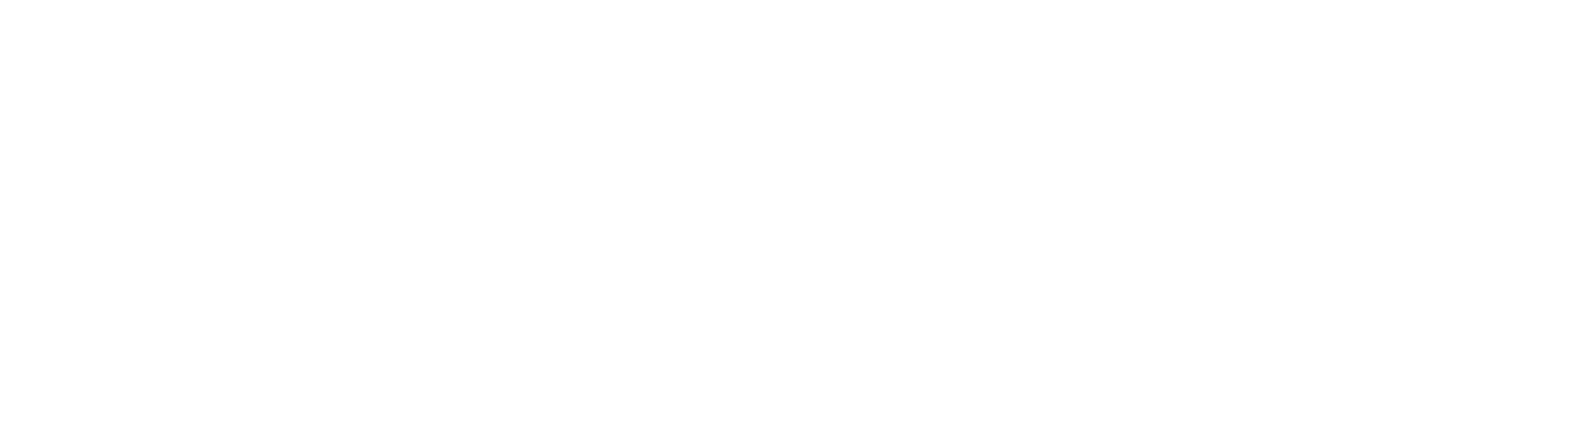 Tesco logo large for dark backgrounds (transparent PNG)